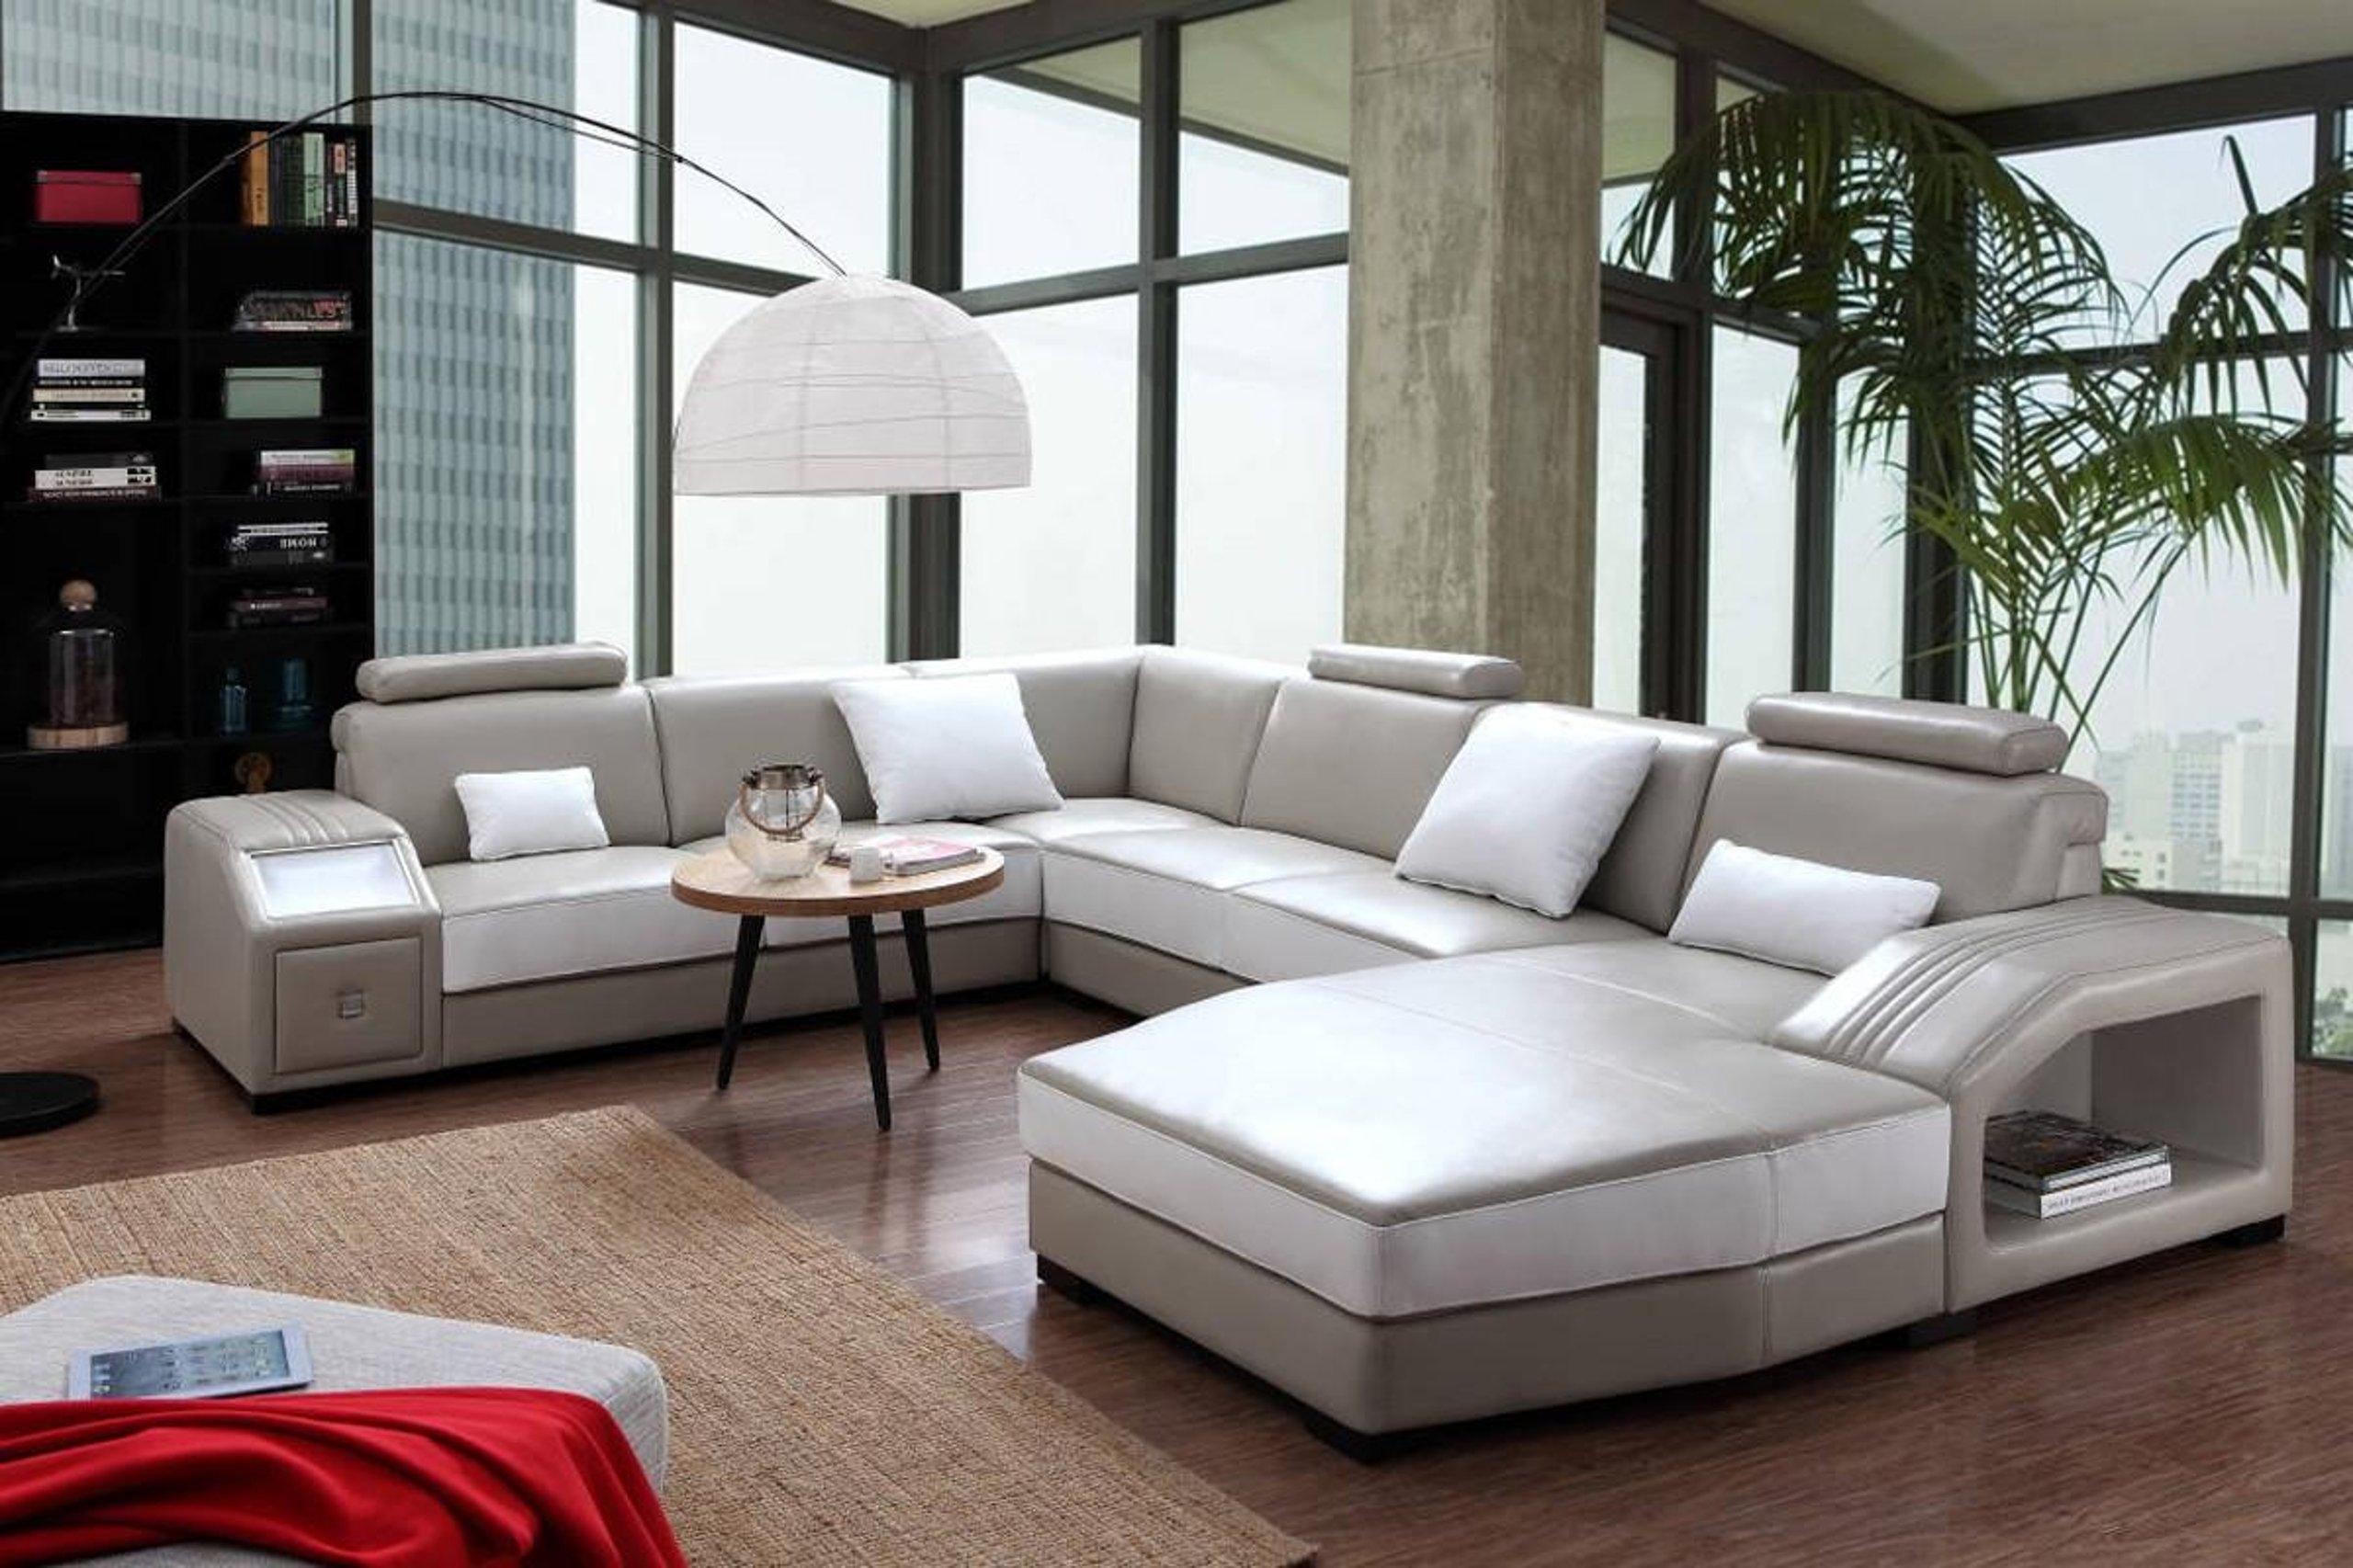 Диваны гранд мебель. Угловой диван Arthur Sectional. Модульный диван с электроприводом. Квадратная мягкая мебель. Диваны дорогие и качественные.